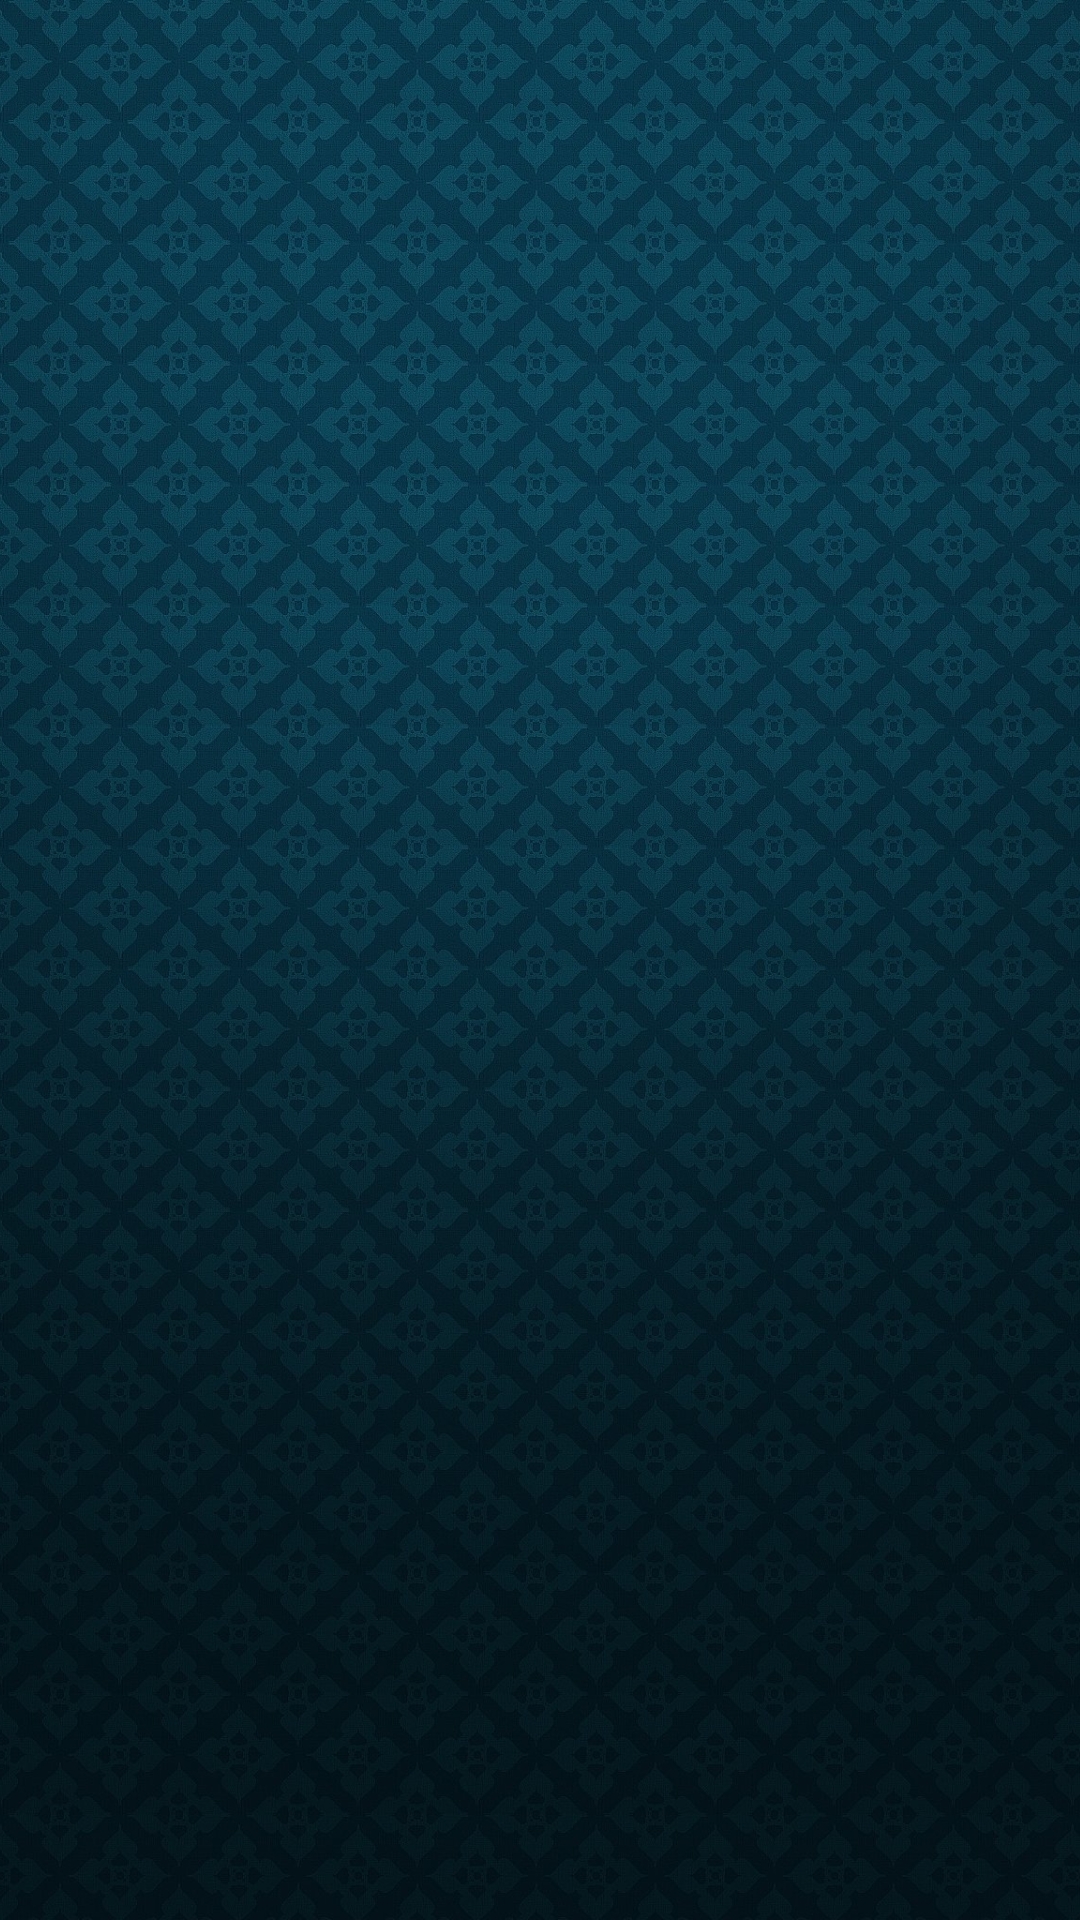 45+] iPhone 6 Plus Blue Wallpaper - WallpaperSafari